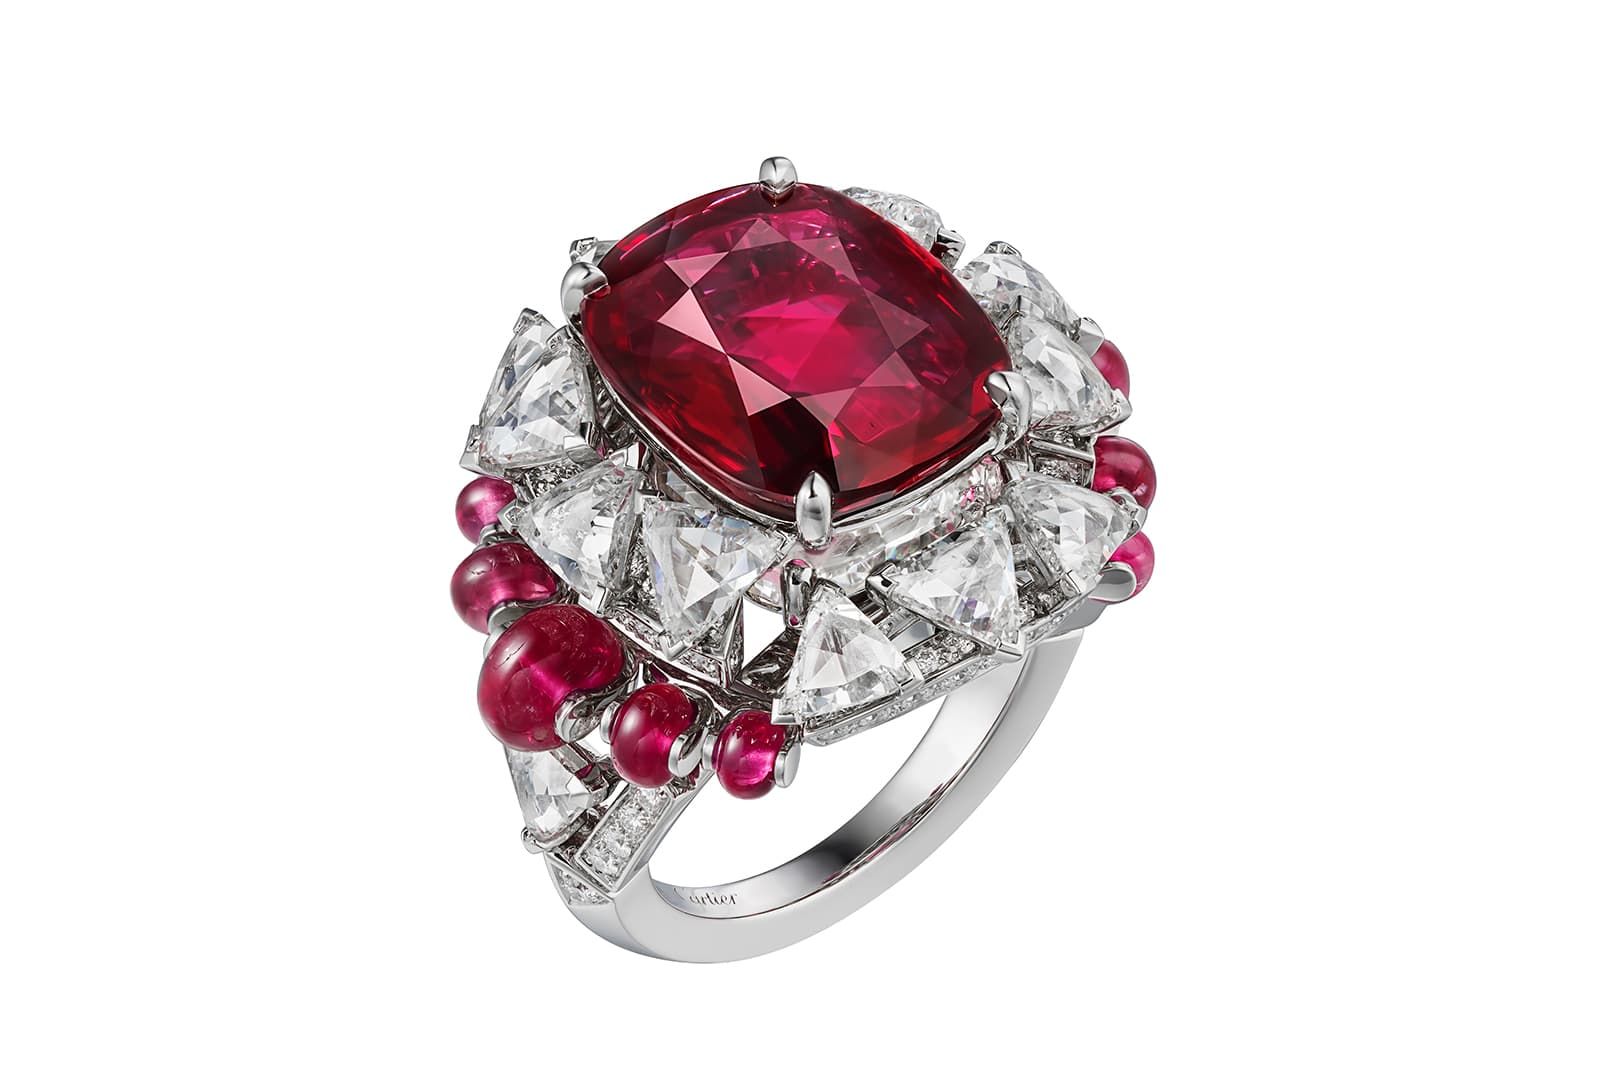 Многослойное кольцо Phaan Из коллекции высокого ювелирного искусства Sixième Sens par Cartier с центральным рубином весом 8,20 карата